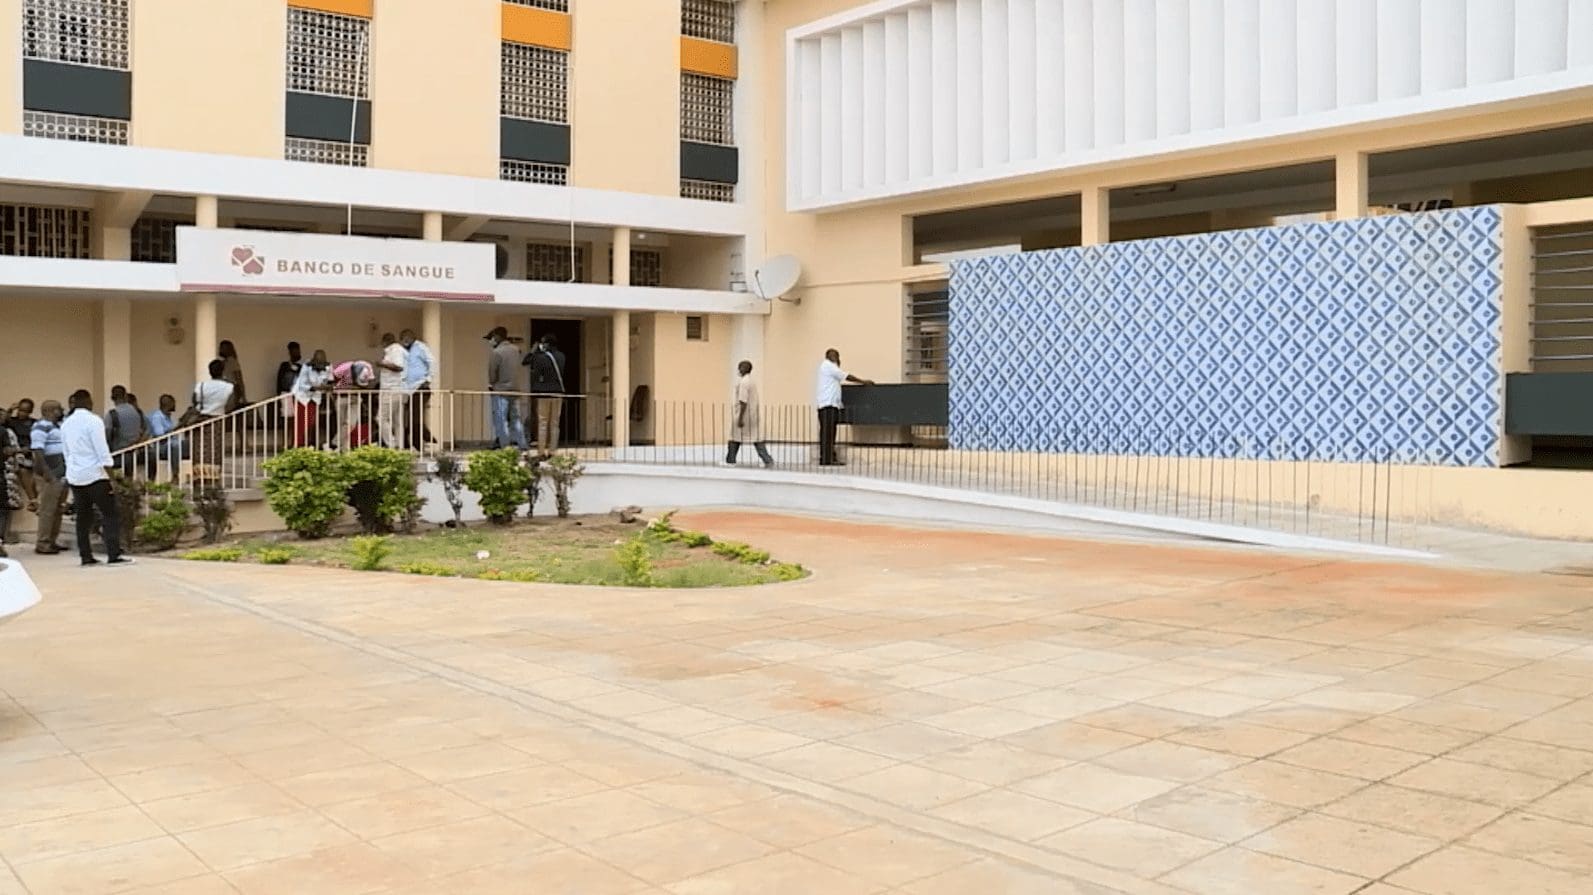 Ambiente calmo caracteriza unidades hospitalares na cidade e província de Maputo